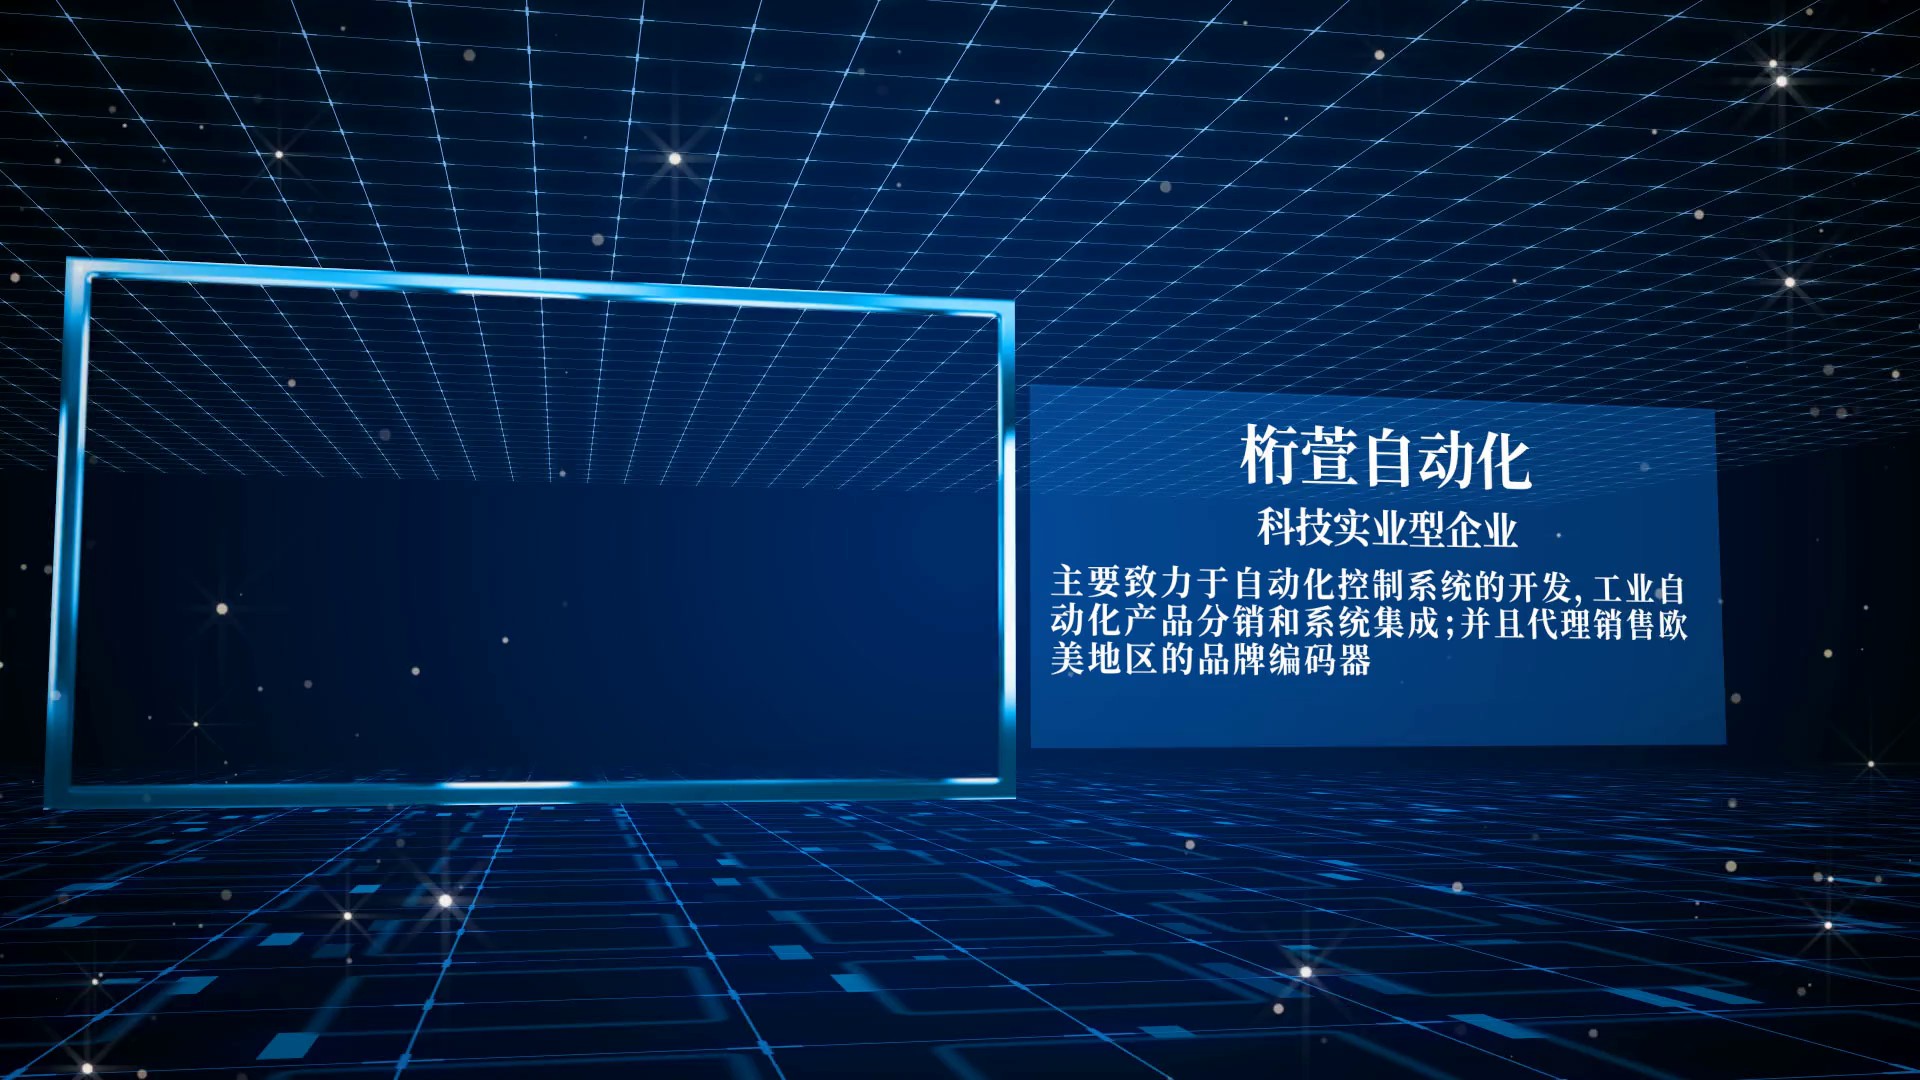 上海光电多圈绝对值编码器安装,光电多圈绝对值编码器